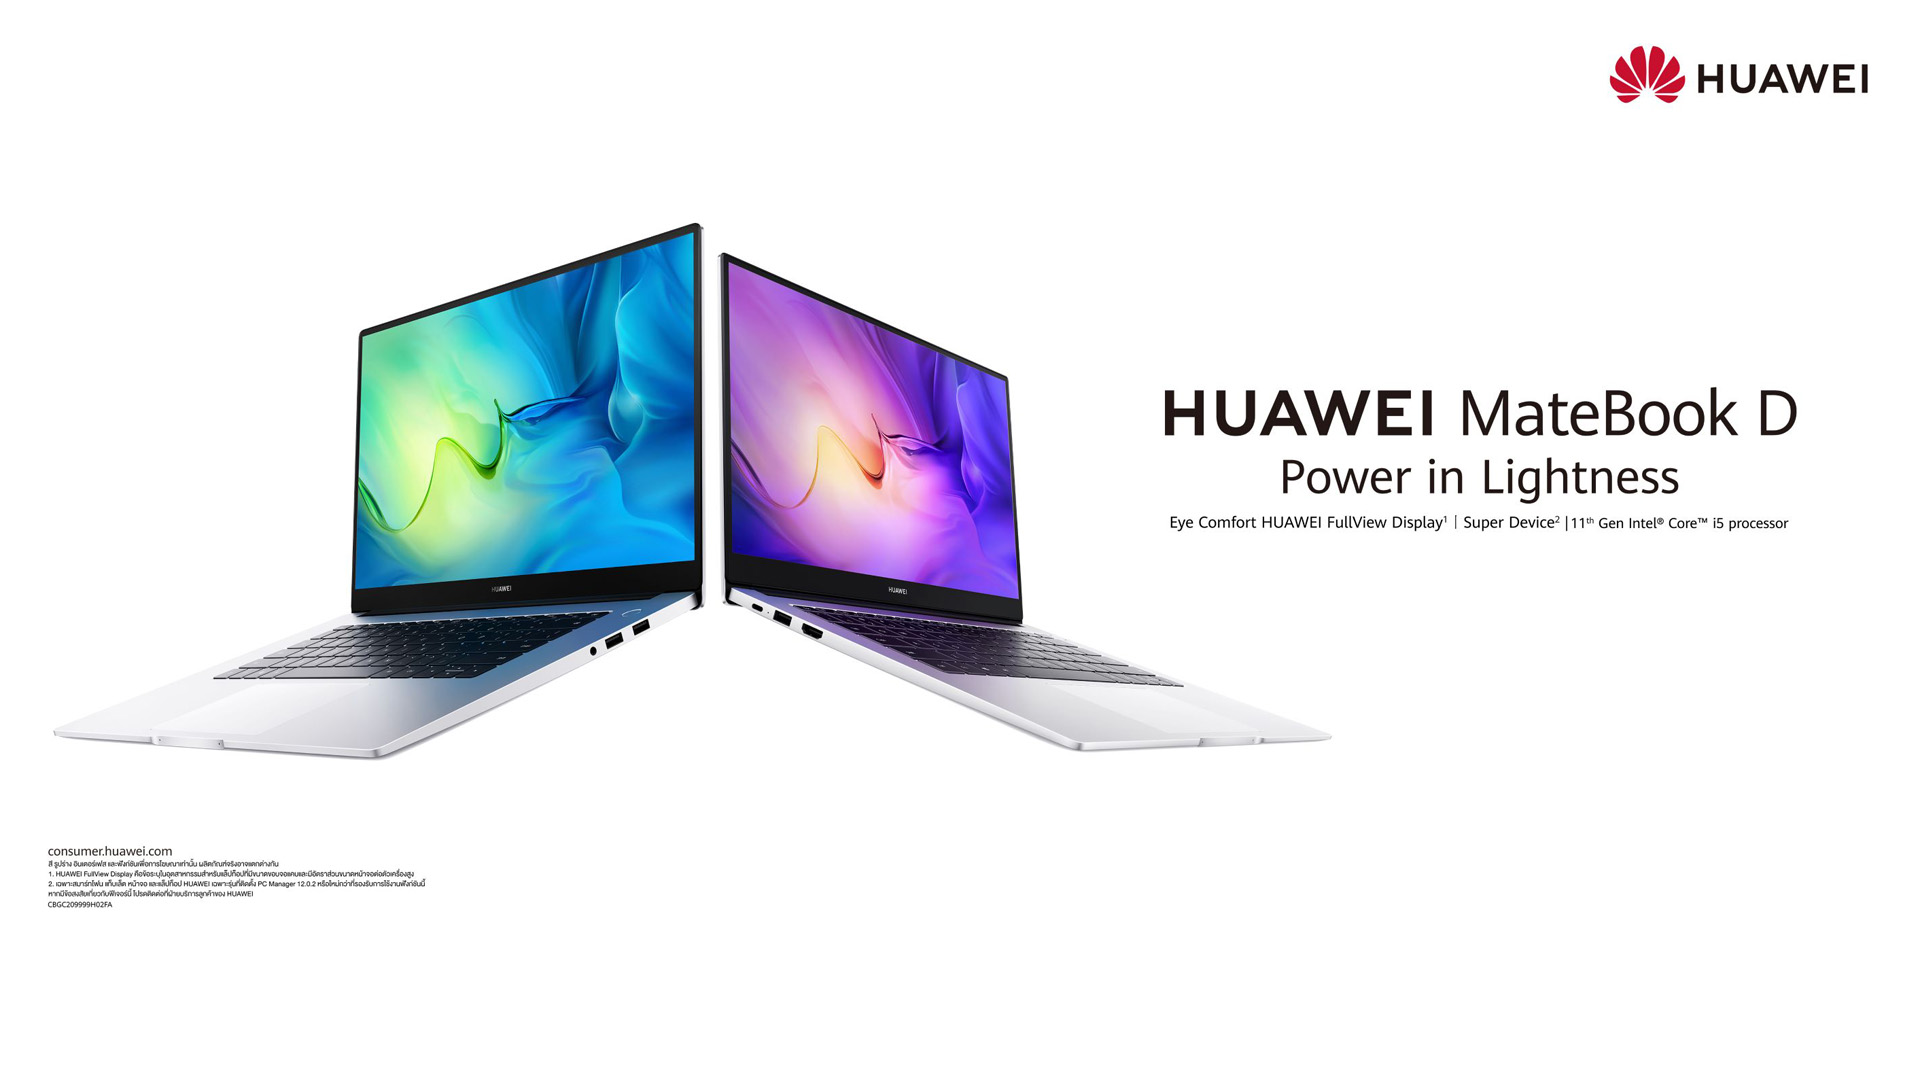 หัวเว่ยส่งไลน์อัป HUAWEI MateBook D series ล่าสุด! จอใหญ่เต็มตา ชูฟีเจอร์ เด่น HUAWEI Super Device